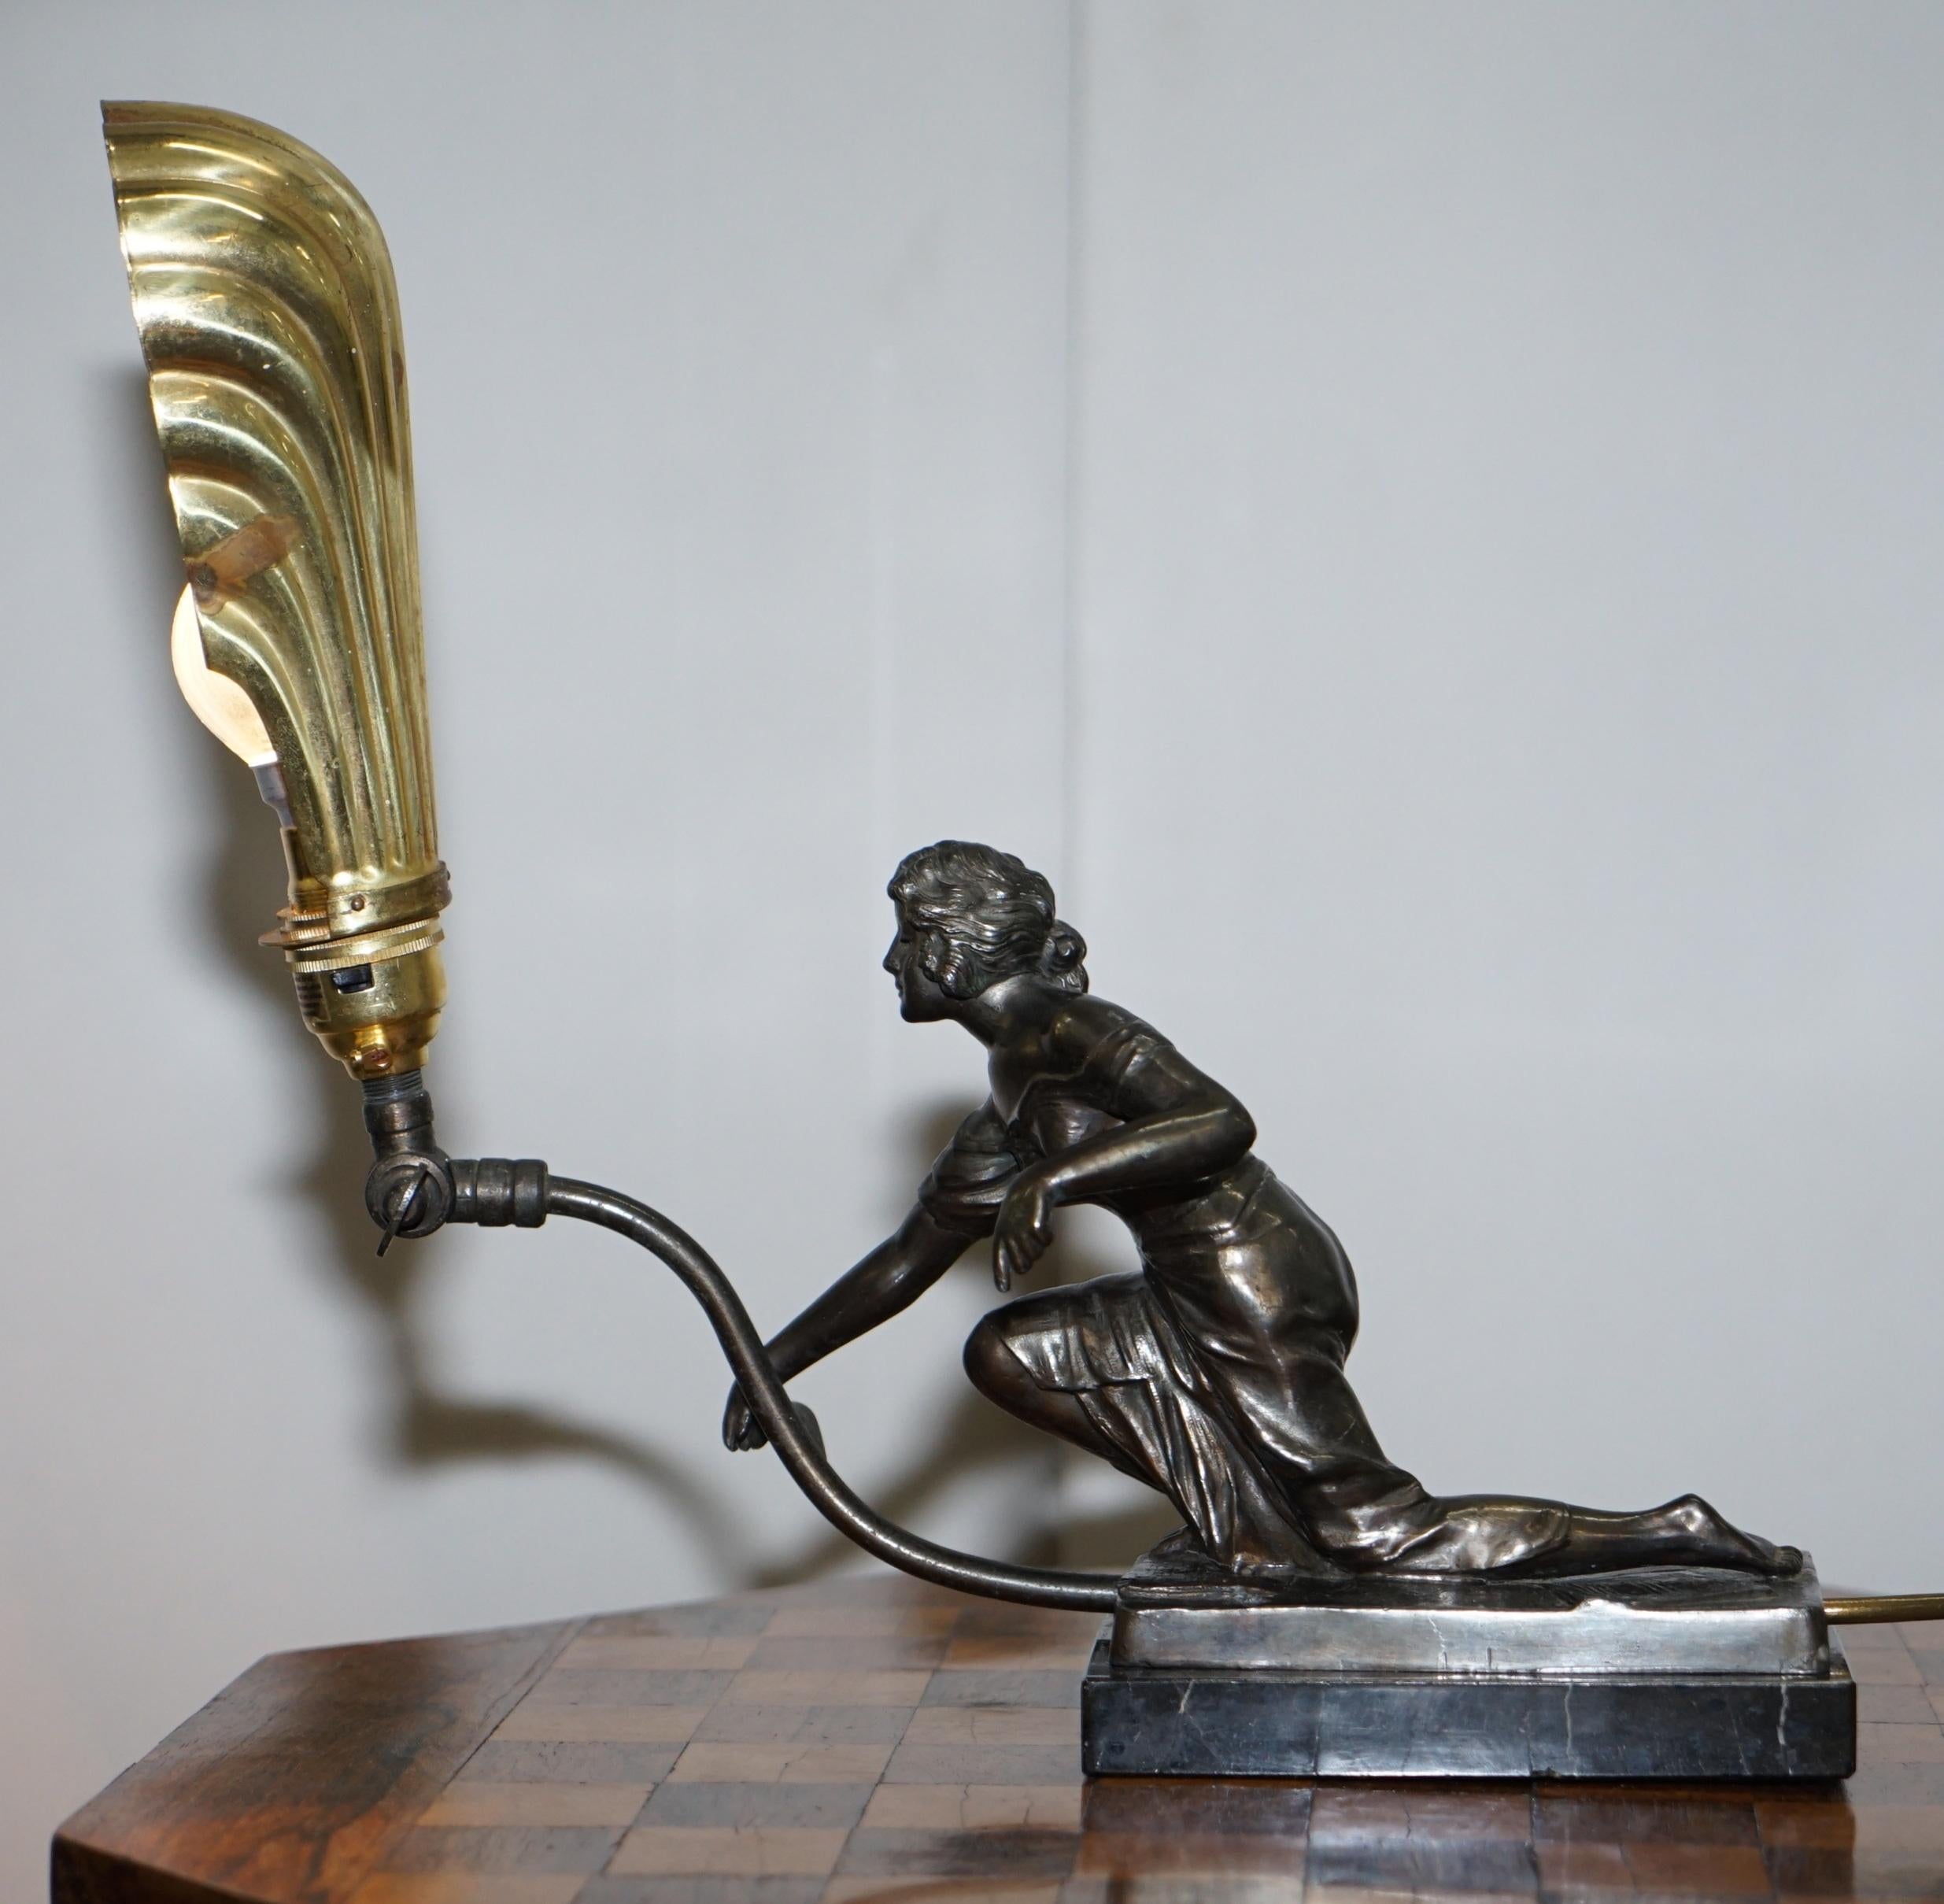 Nous avons le plaisir de proposer à la vente cette belle lampe de table Art Déco originale avec base en marbre, statue en bronze et abat-jour en coquille en bronze doré.

Cette lampe décorative de belle facture est dotée d'un abat-jour articulé et